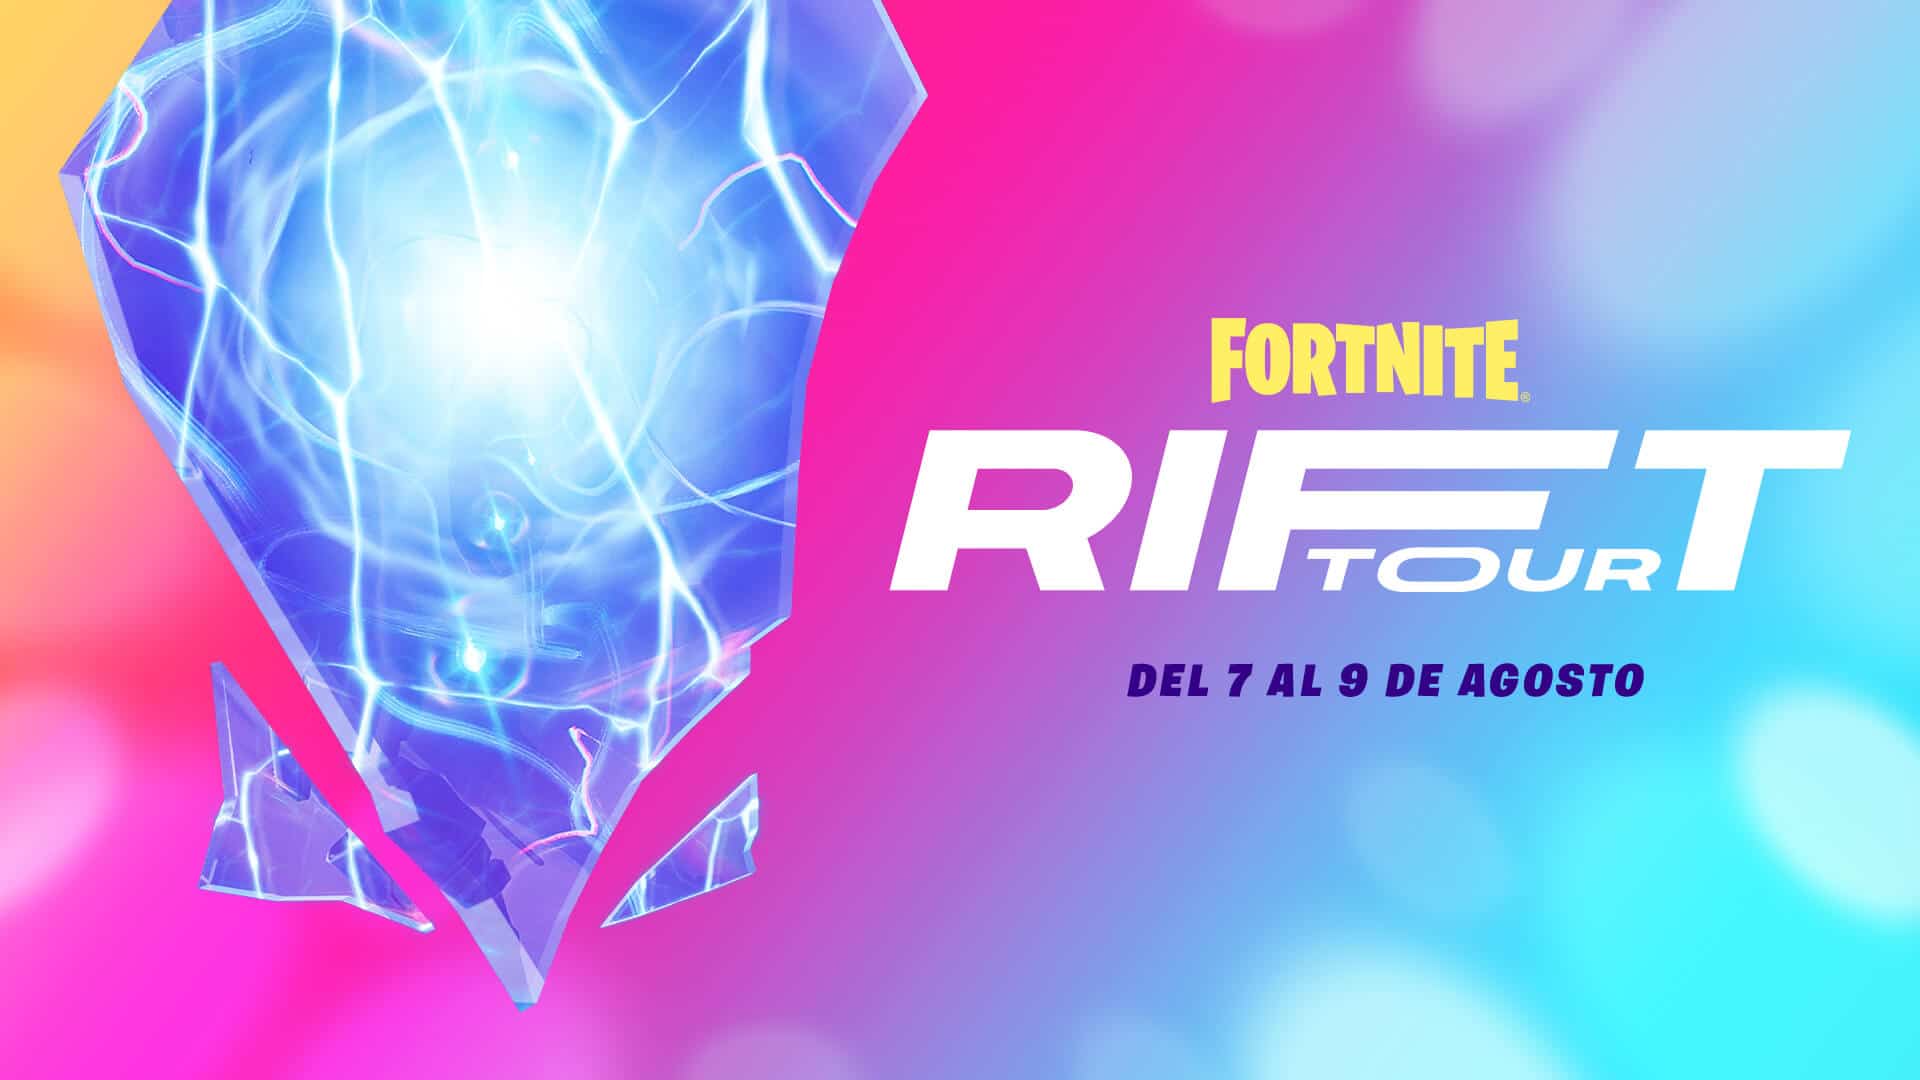 Fortnite promete una superestrella de récord en su evento Rift Tour: esto es todo lo que sabemos